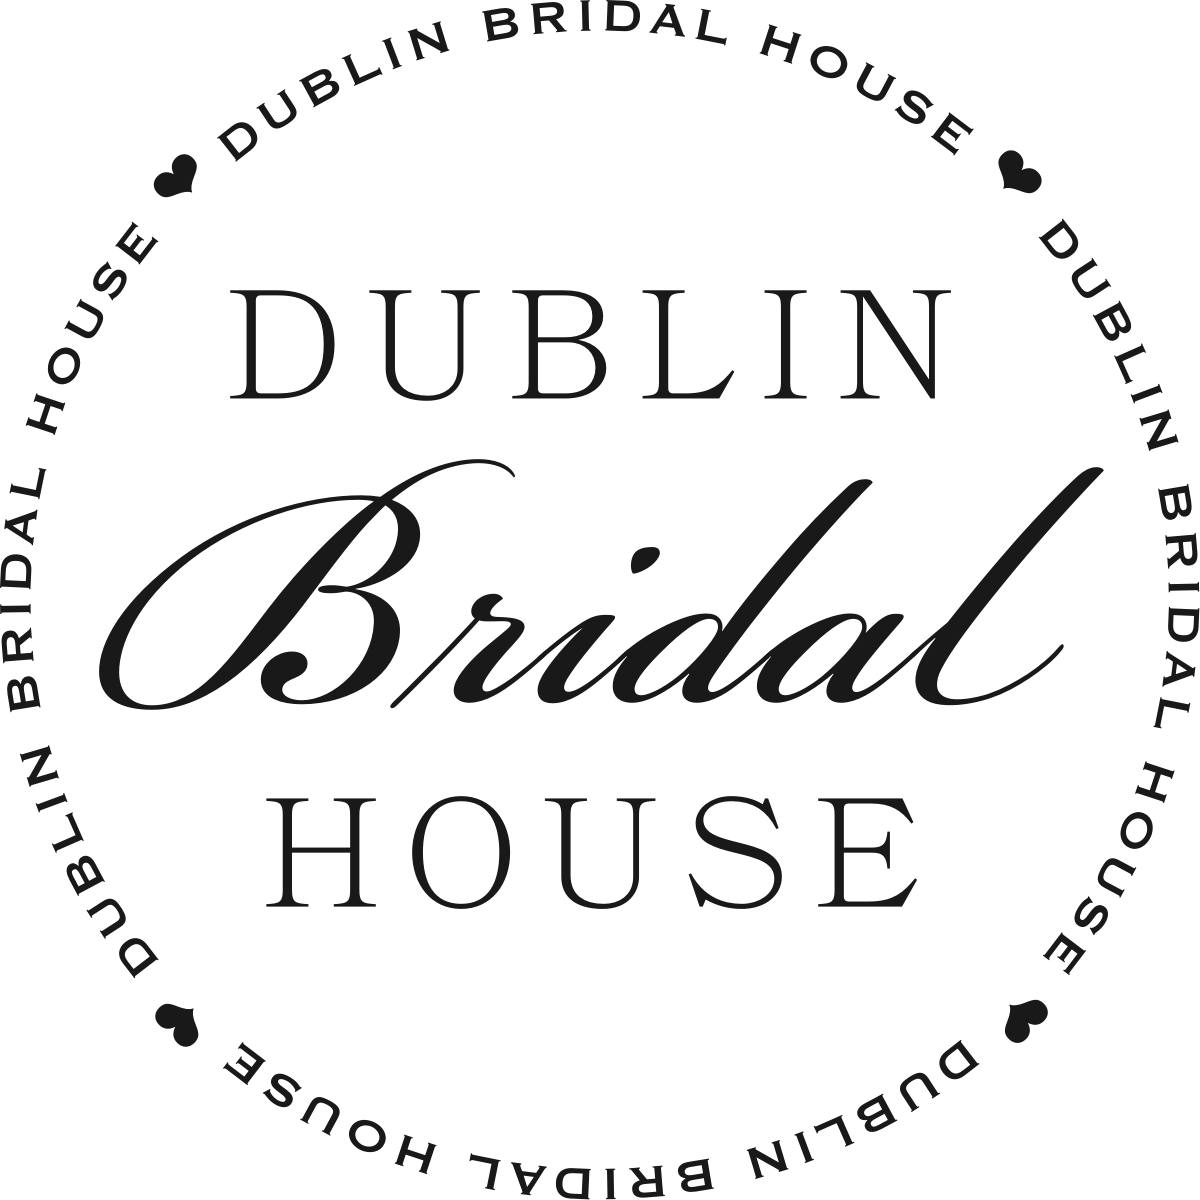 Dublin Bridal House